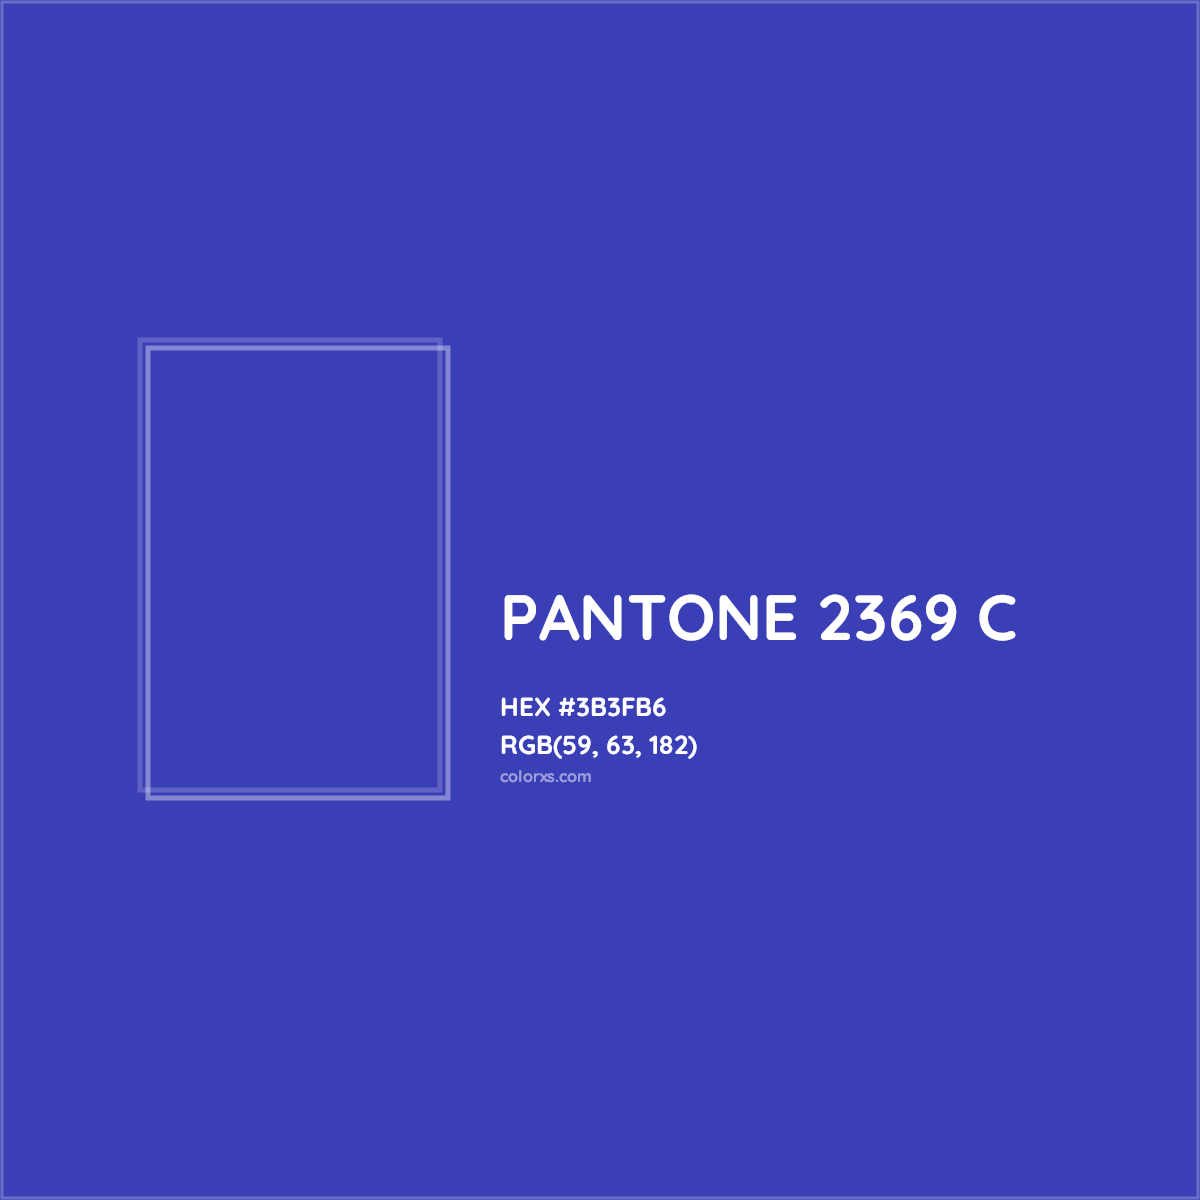 HEX #3B3FB6 PANTONE 2369 C CMS Pantone PMS - Color Code